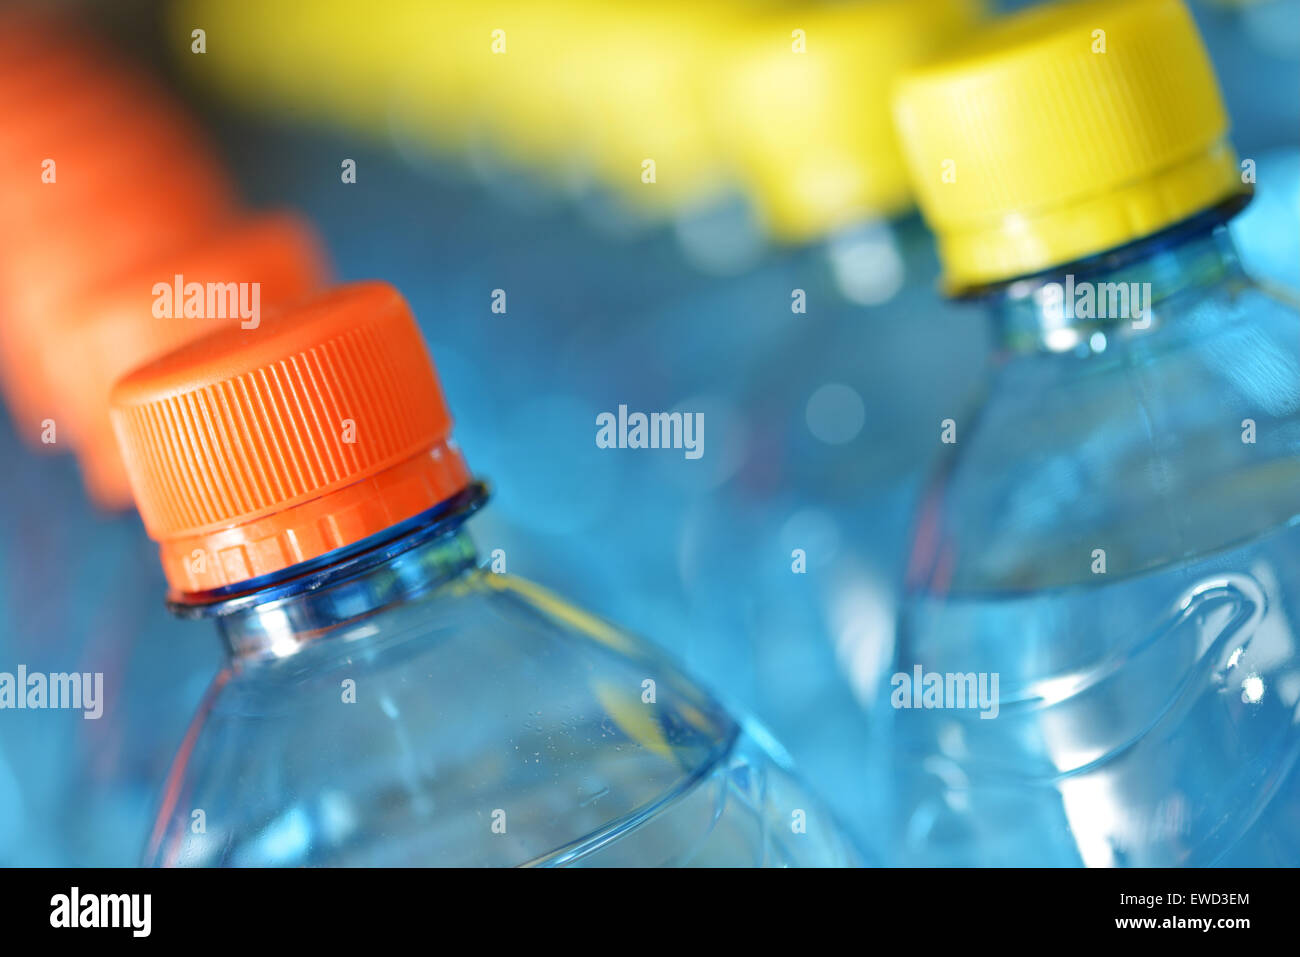 Plastic bottles Stock Photo